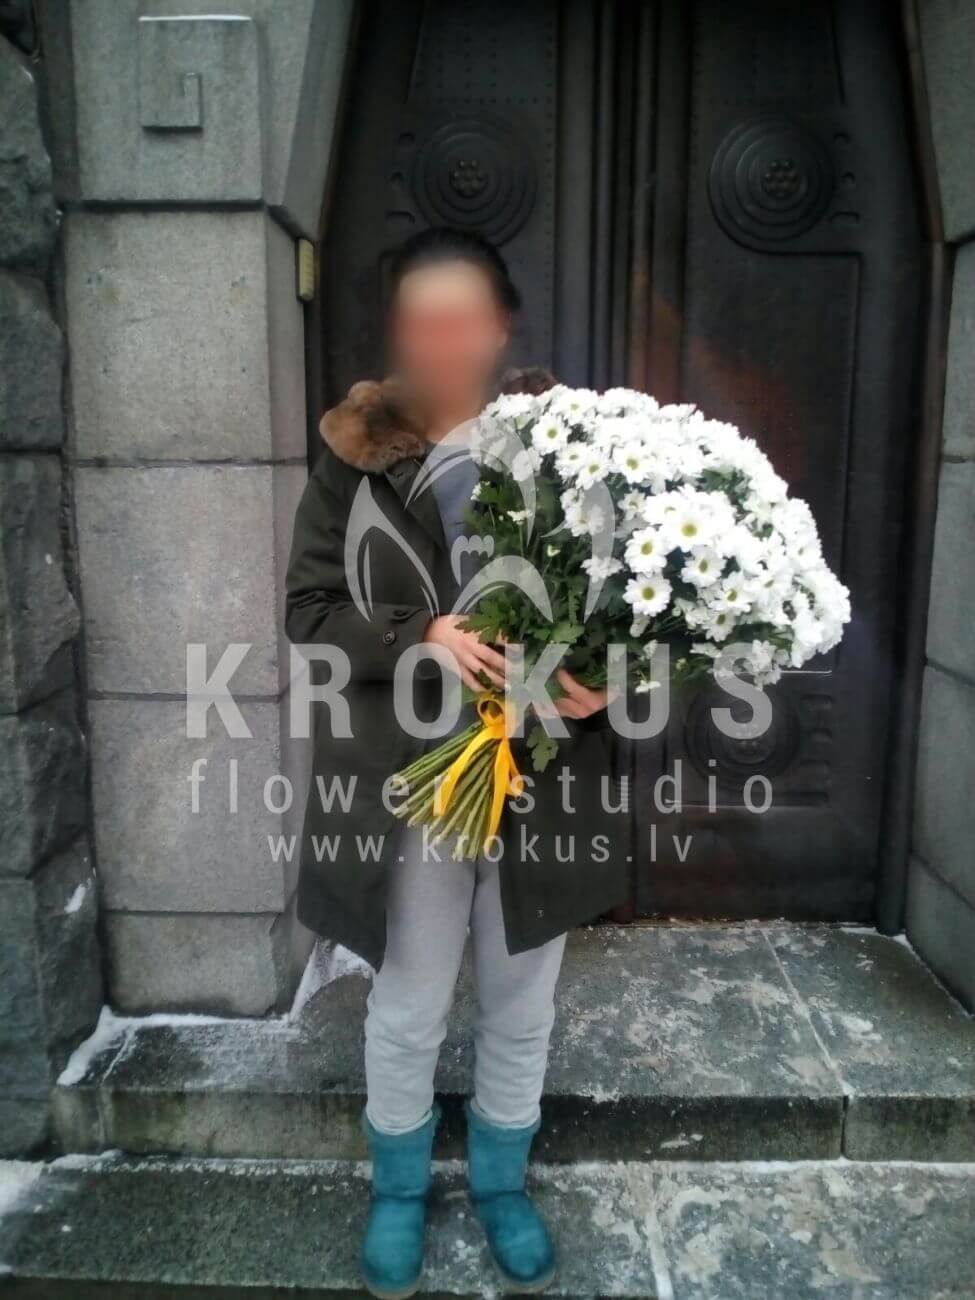 Доставка цветов в город Latvia (хризантемыромашки)